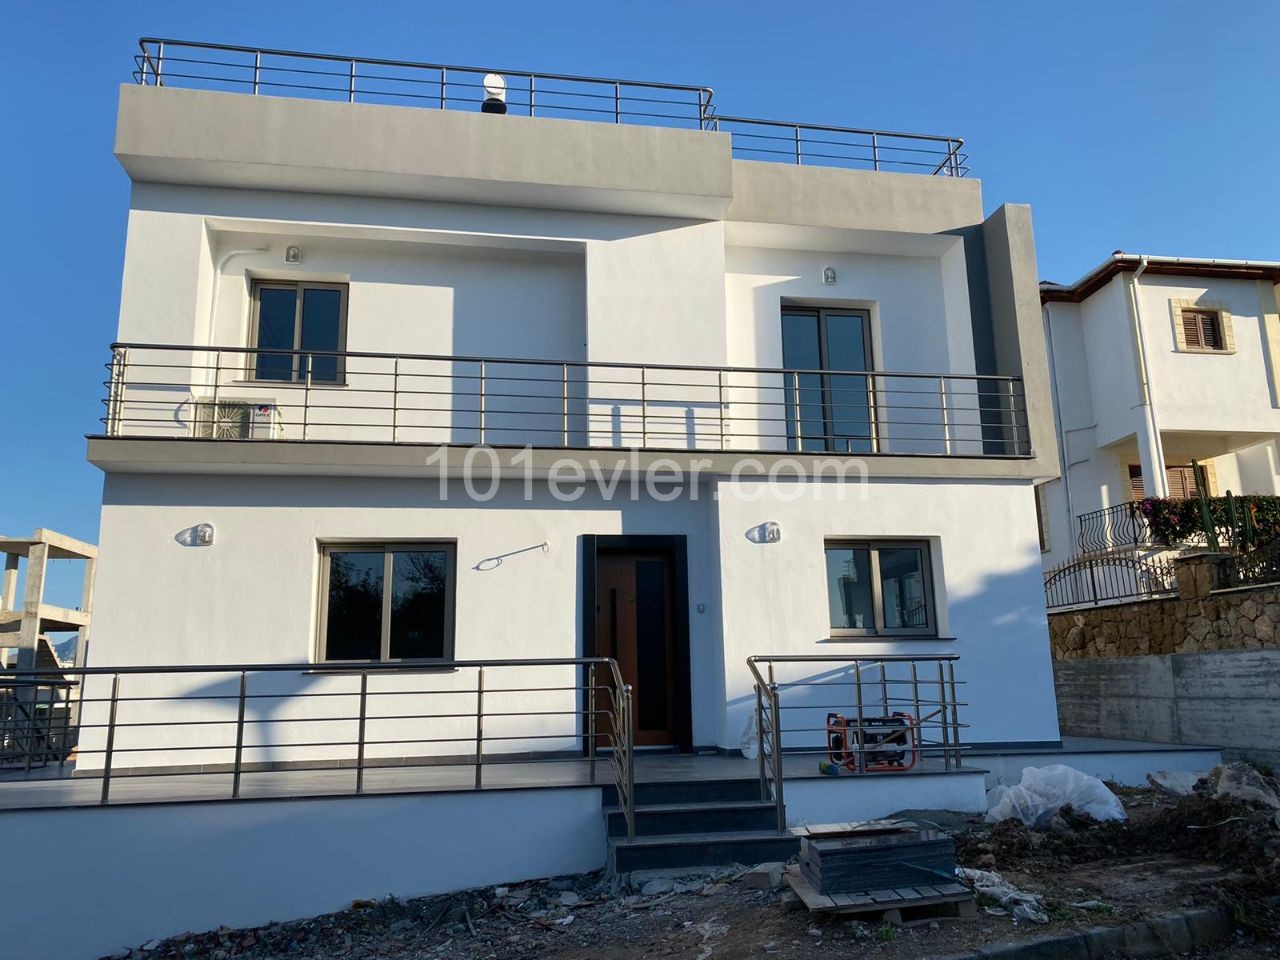 Kıbrıs Girne Çatalköy de lüks Villa. 3+1..... 120 m2 iç alan 90 m2 balcon, 240 m2 bahçe...50 bin stg değerinde daire araba iç8ne akınabilir.